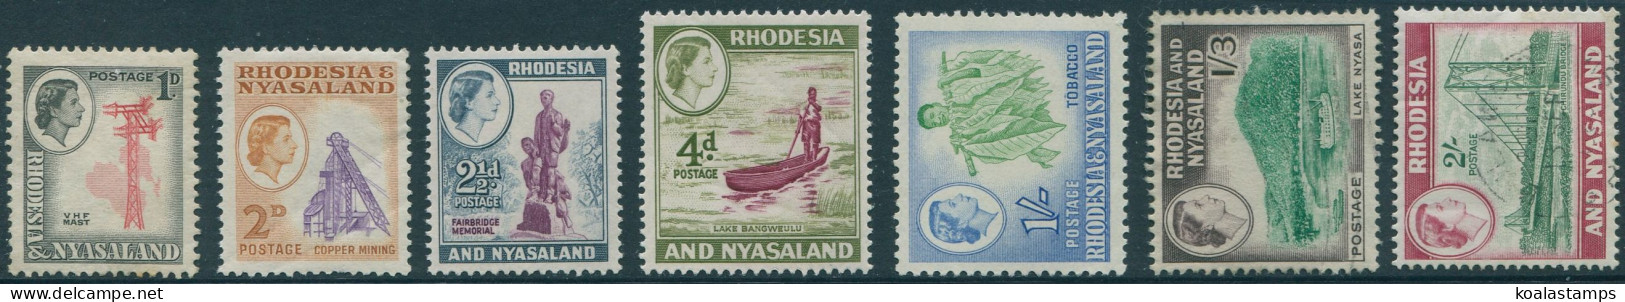 Rhodesia And Nyasaland 1959 SG20-26 Scenes (5) MNH - Rhodesia & Nyasaland (1954-1963)